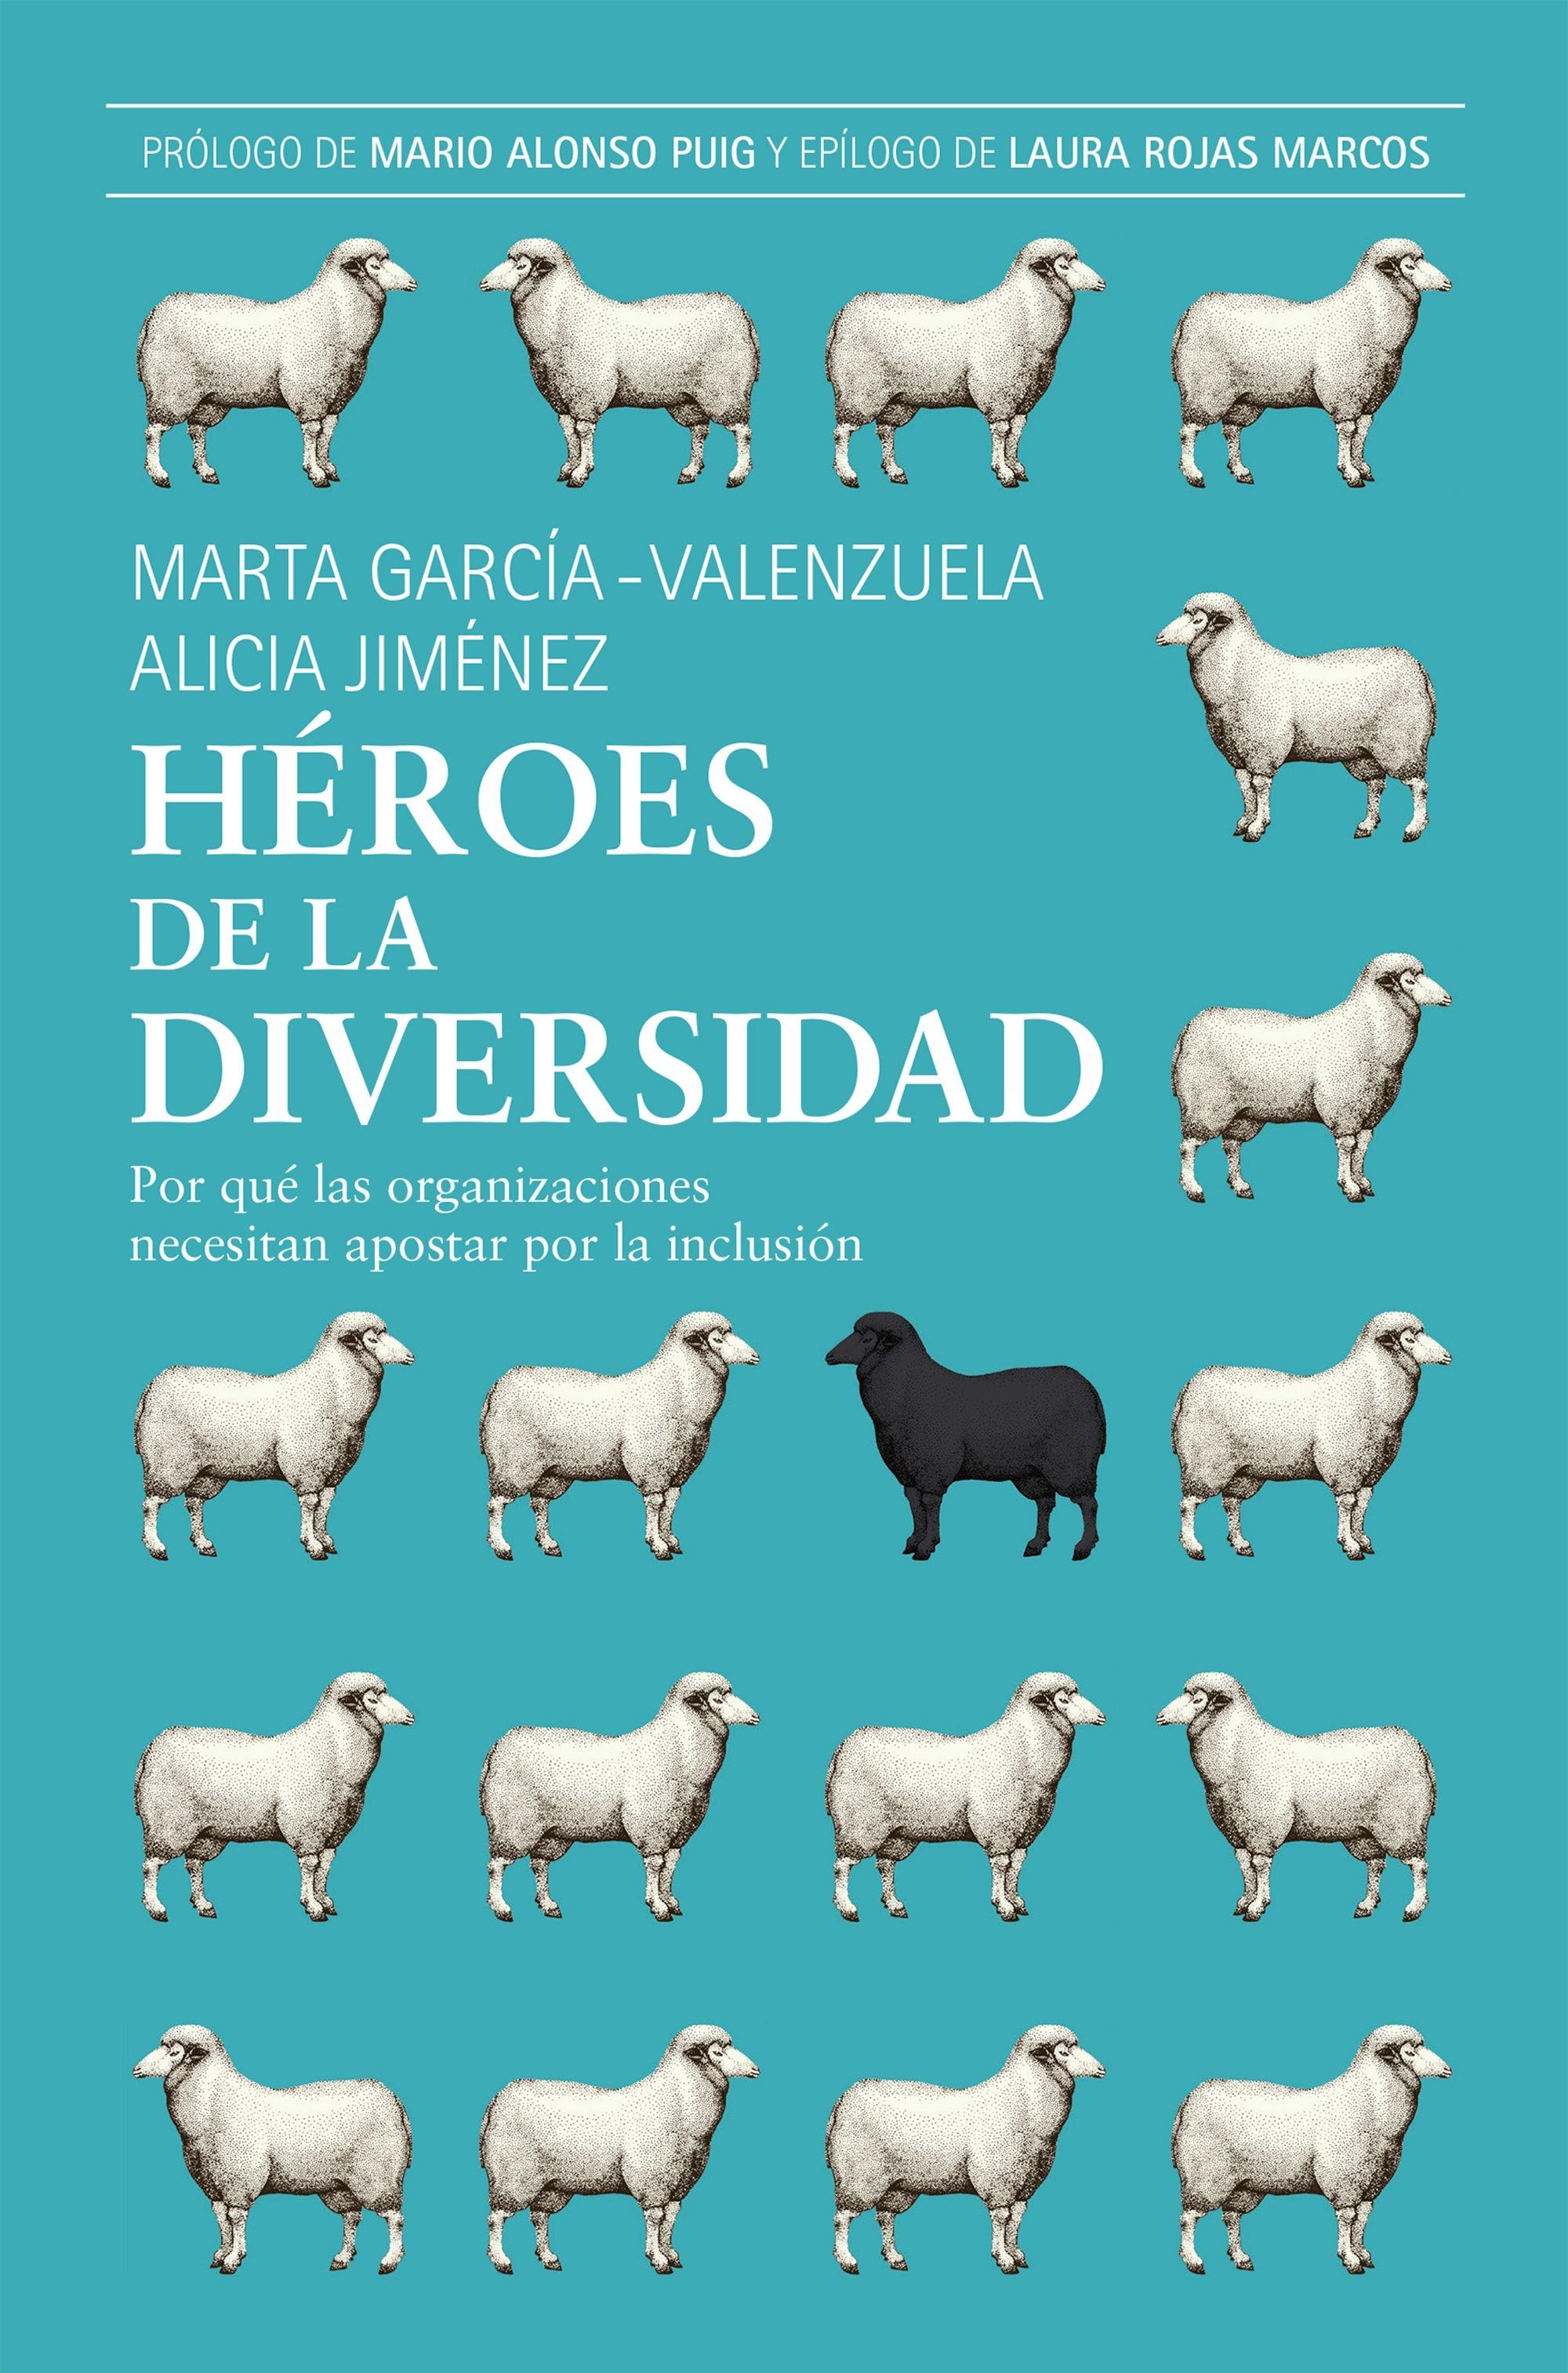 Héroes de la Diversidad "Por que las Organizaciones Necesitan Apostar por la Inclusión". 